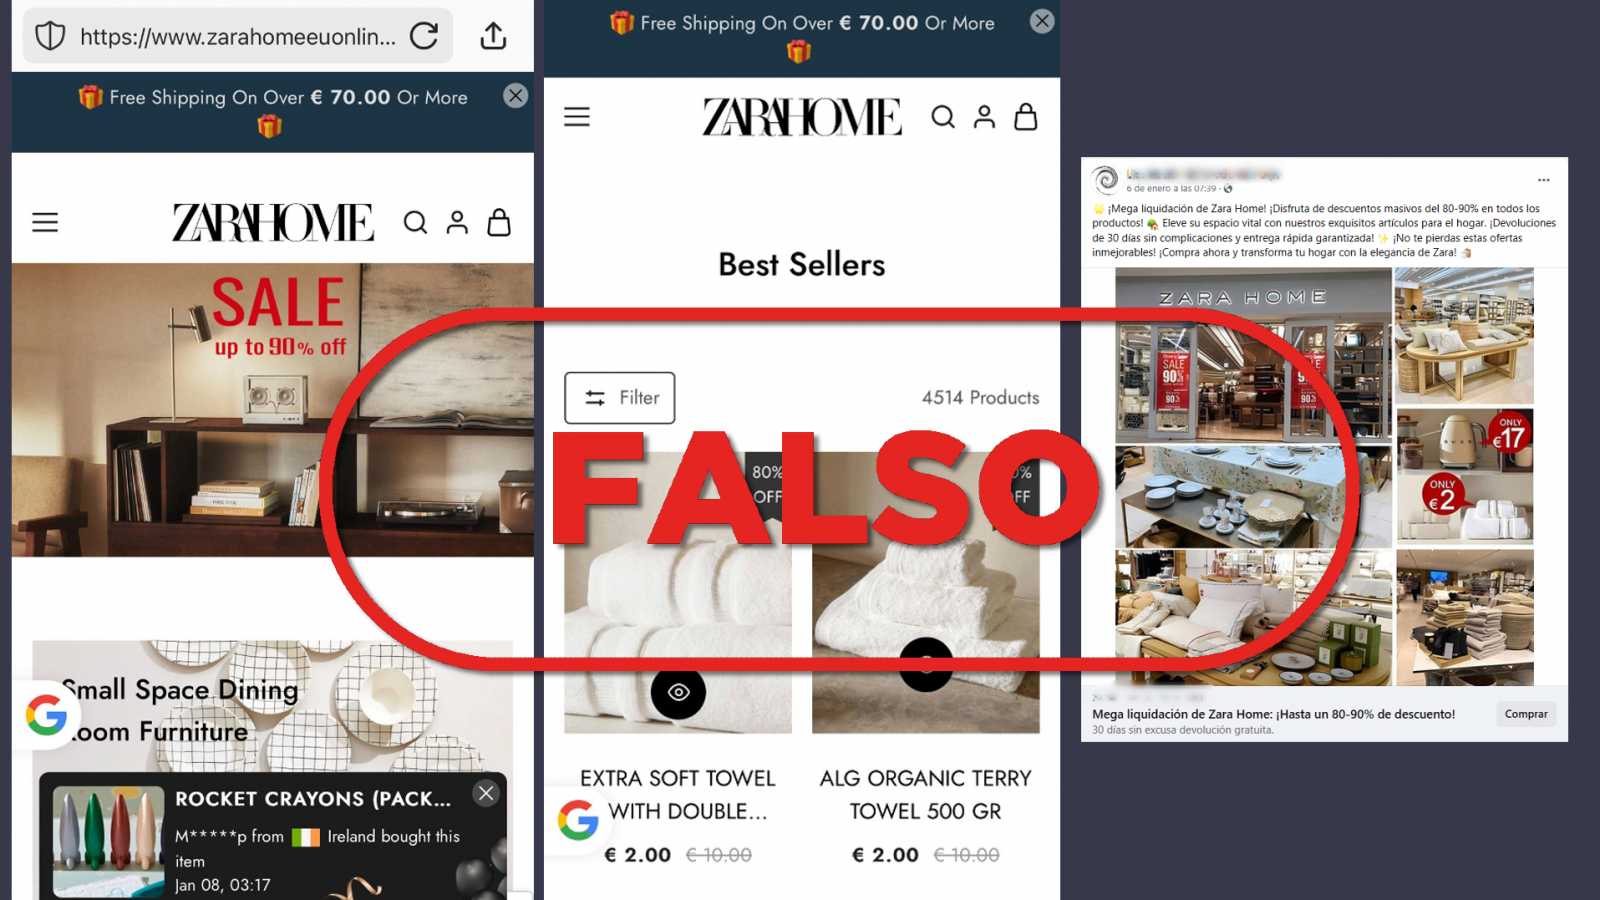 Estafa: Esta página web que anuncia grandes descuentos en Zara Home es falsa, con el sello Falso en rojo